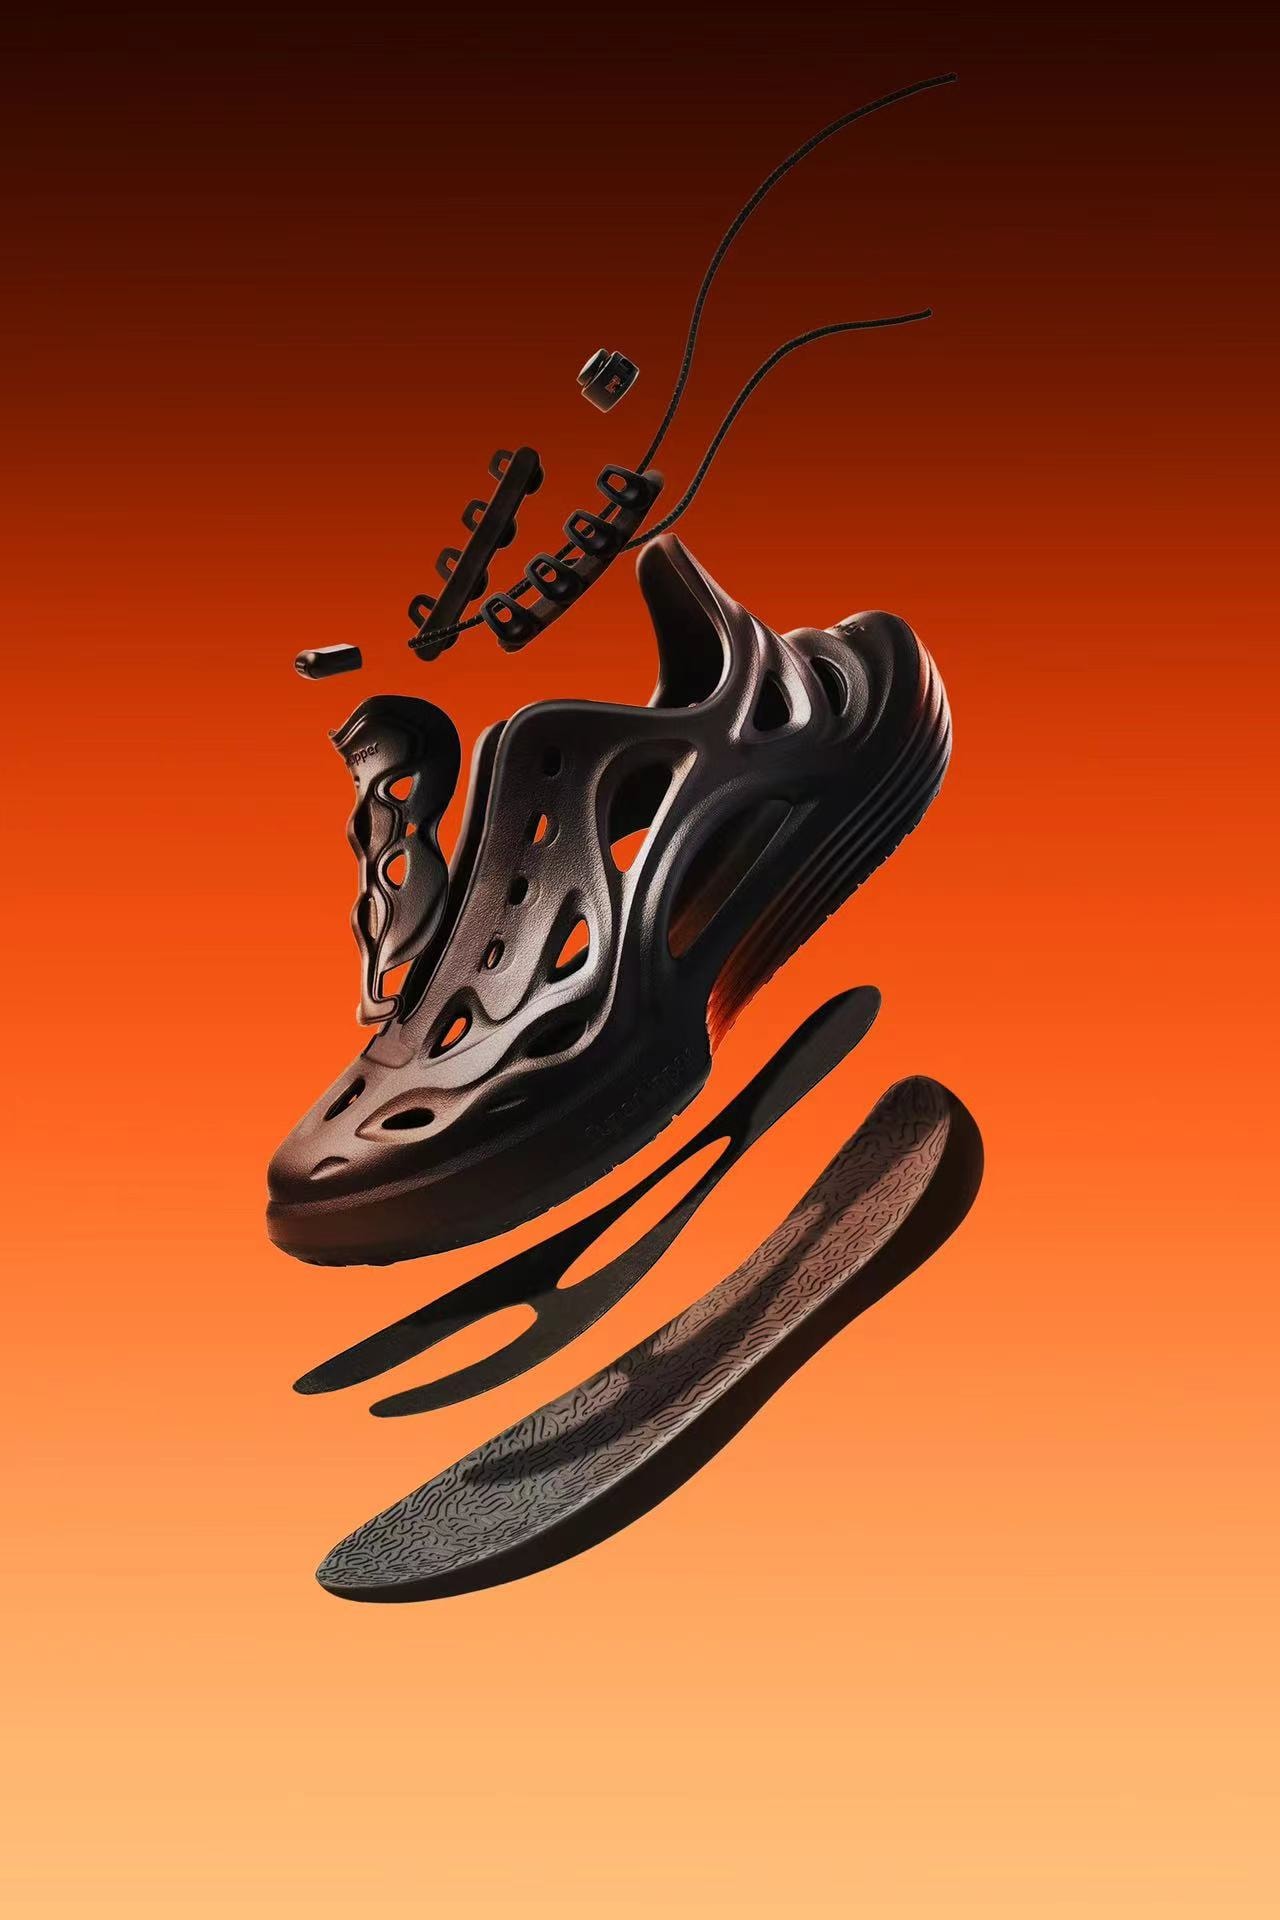 SuperLipper 发布全新功能凉鞋 WAVE